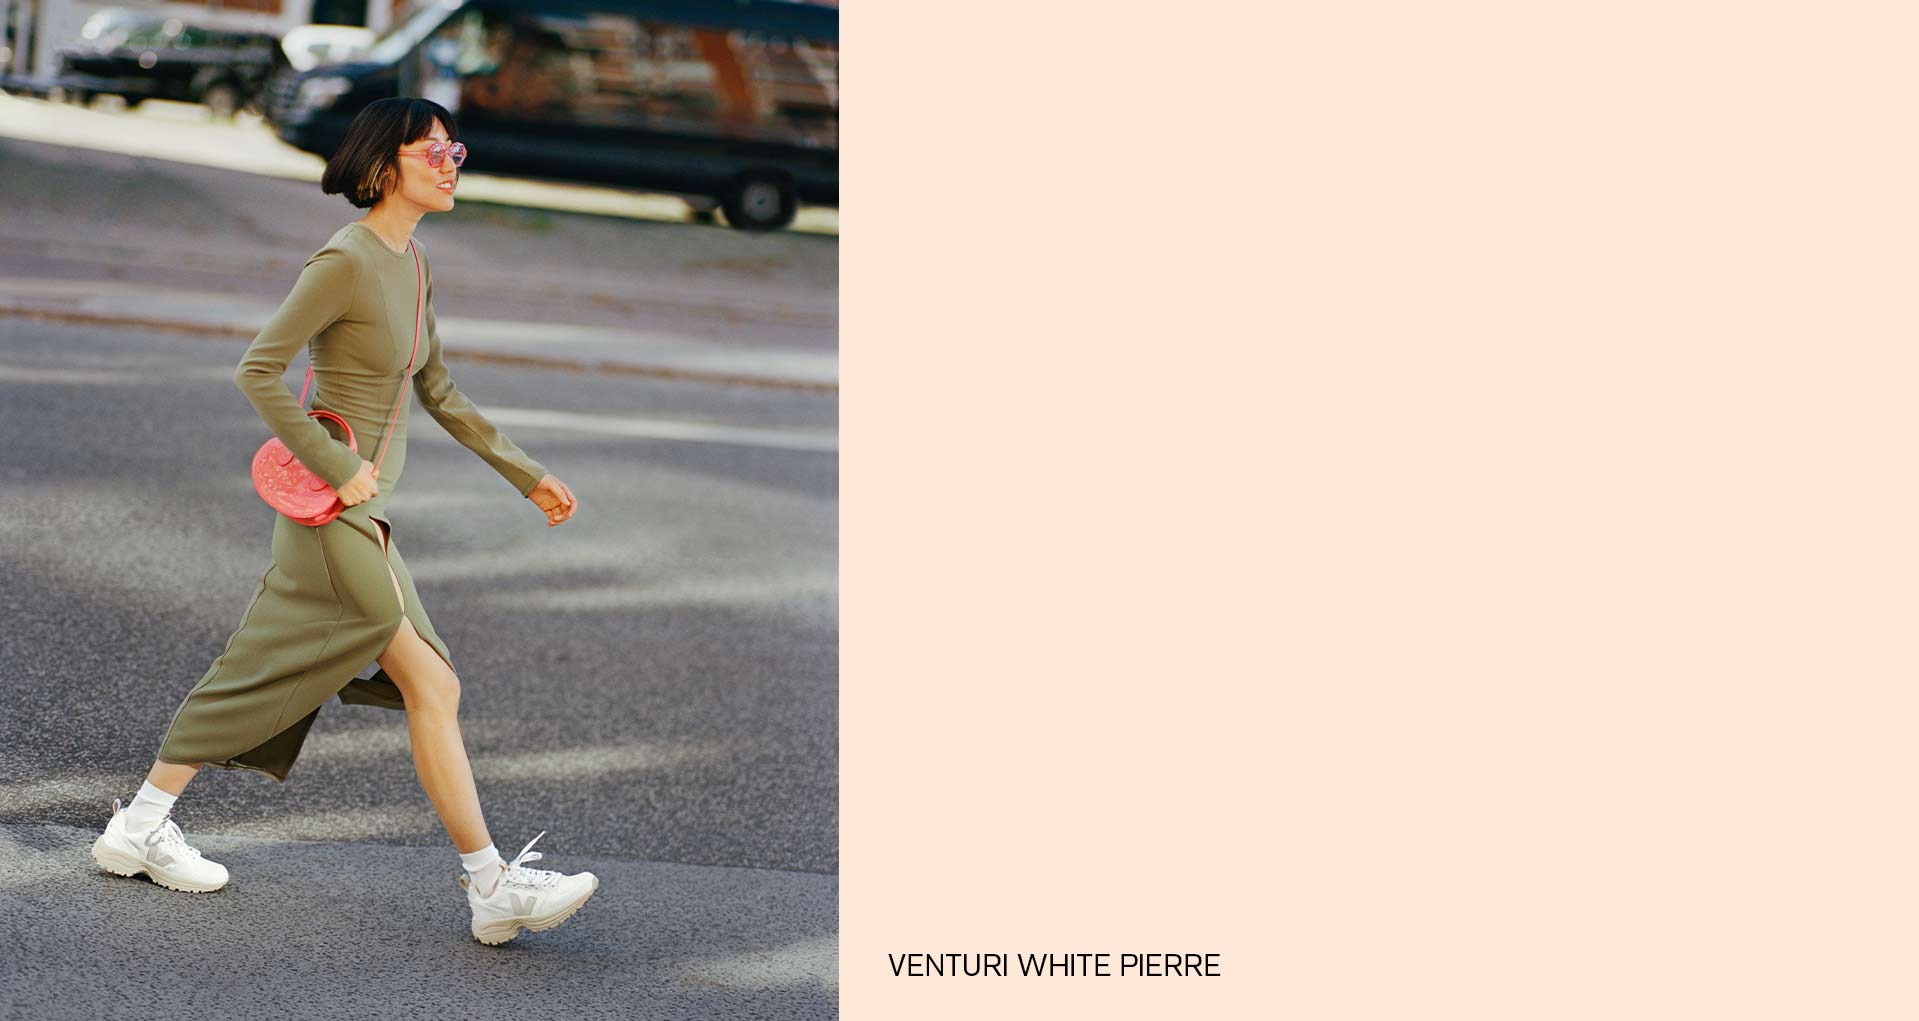 mujer caminando con VEJA venturi zapatillas de deporte de piedra blanca en el pie